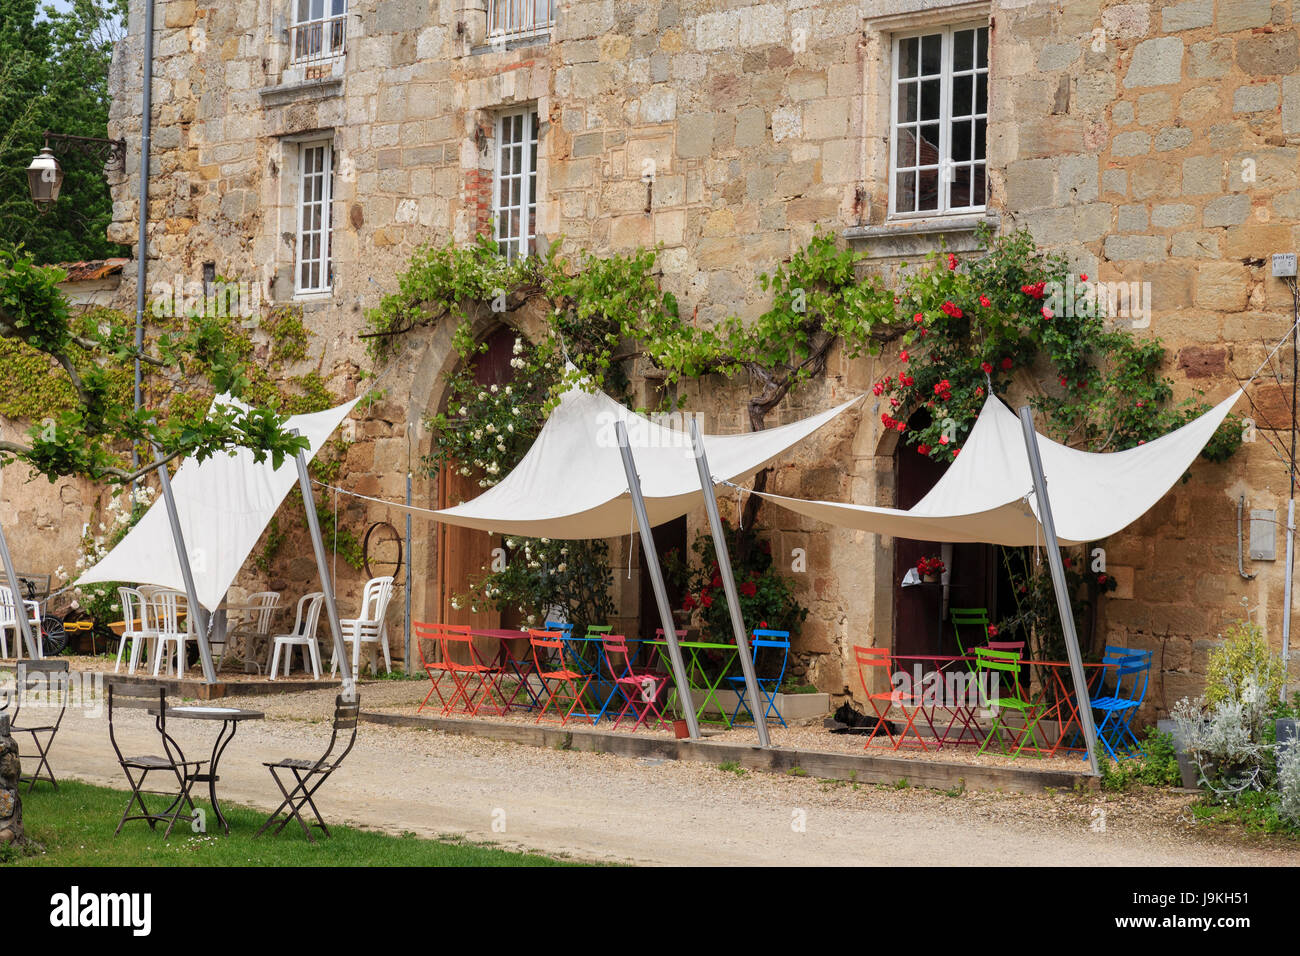 France, Dordogne, Saint Jean de Cole, labelled Les Plus Beaux Villages de France (The Most beautiful Villages of France), terrace of a restaurant Stock Photo